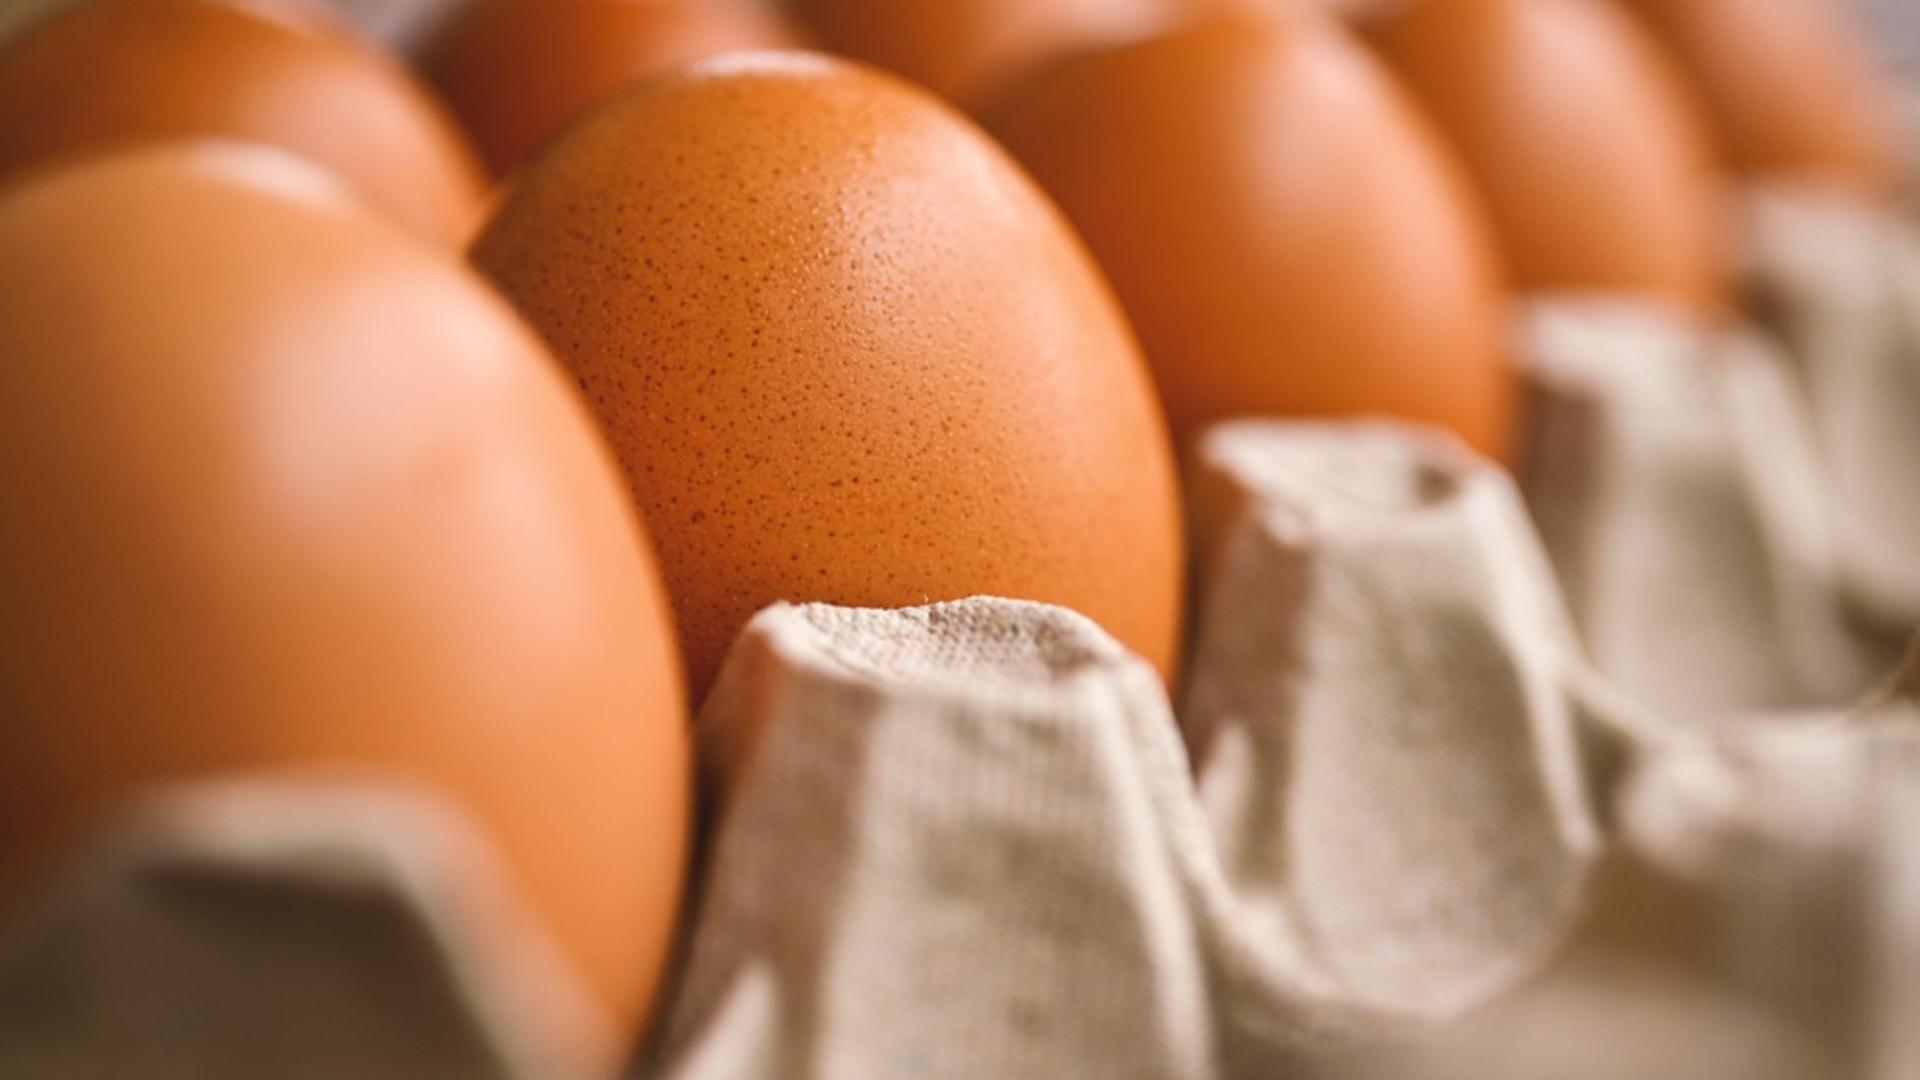 Testul prin care îţi dai seama cât de proaspăt este un ou, fără să îl spargi. Ai nevoie doar de un pahar cu apă